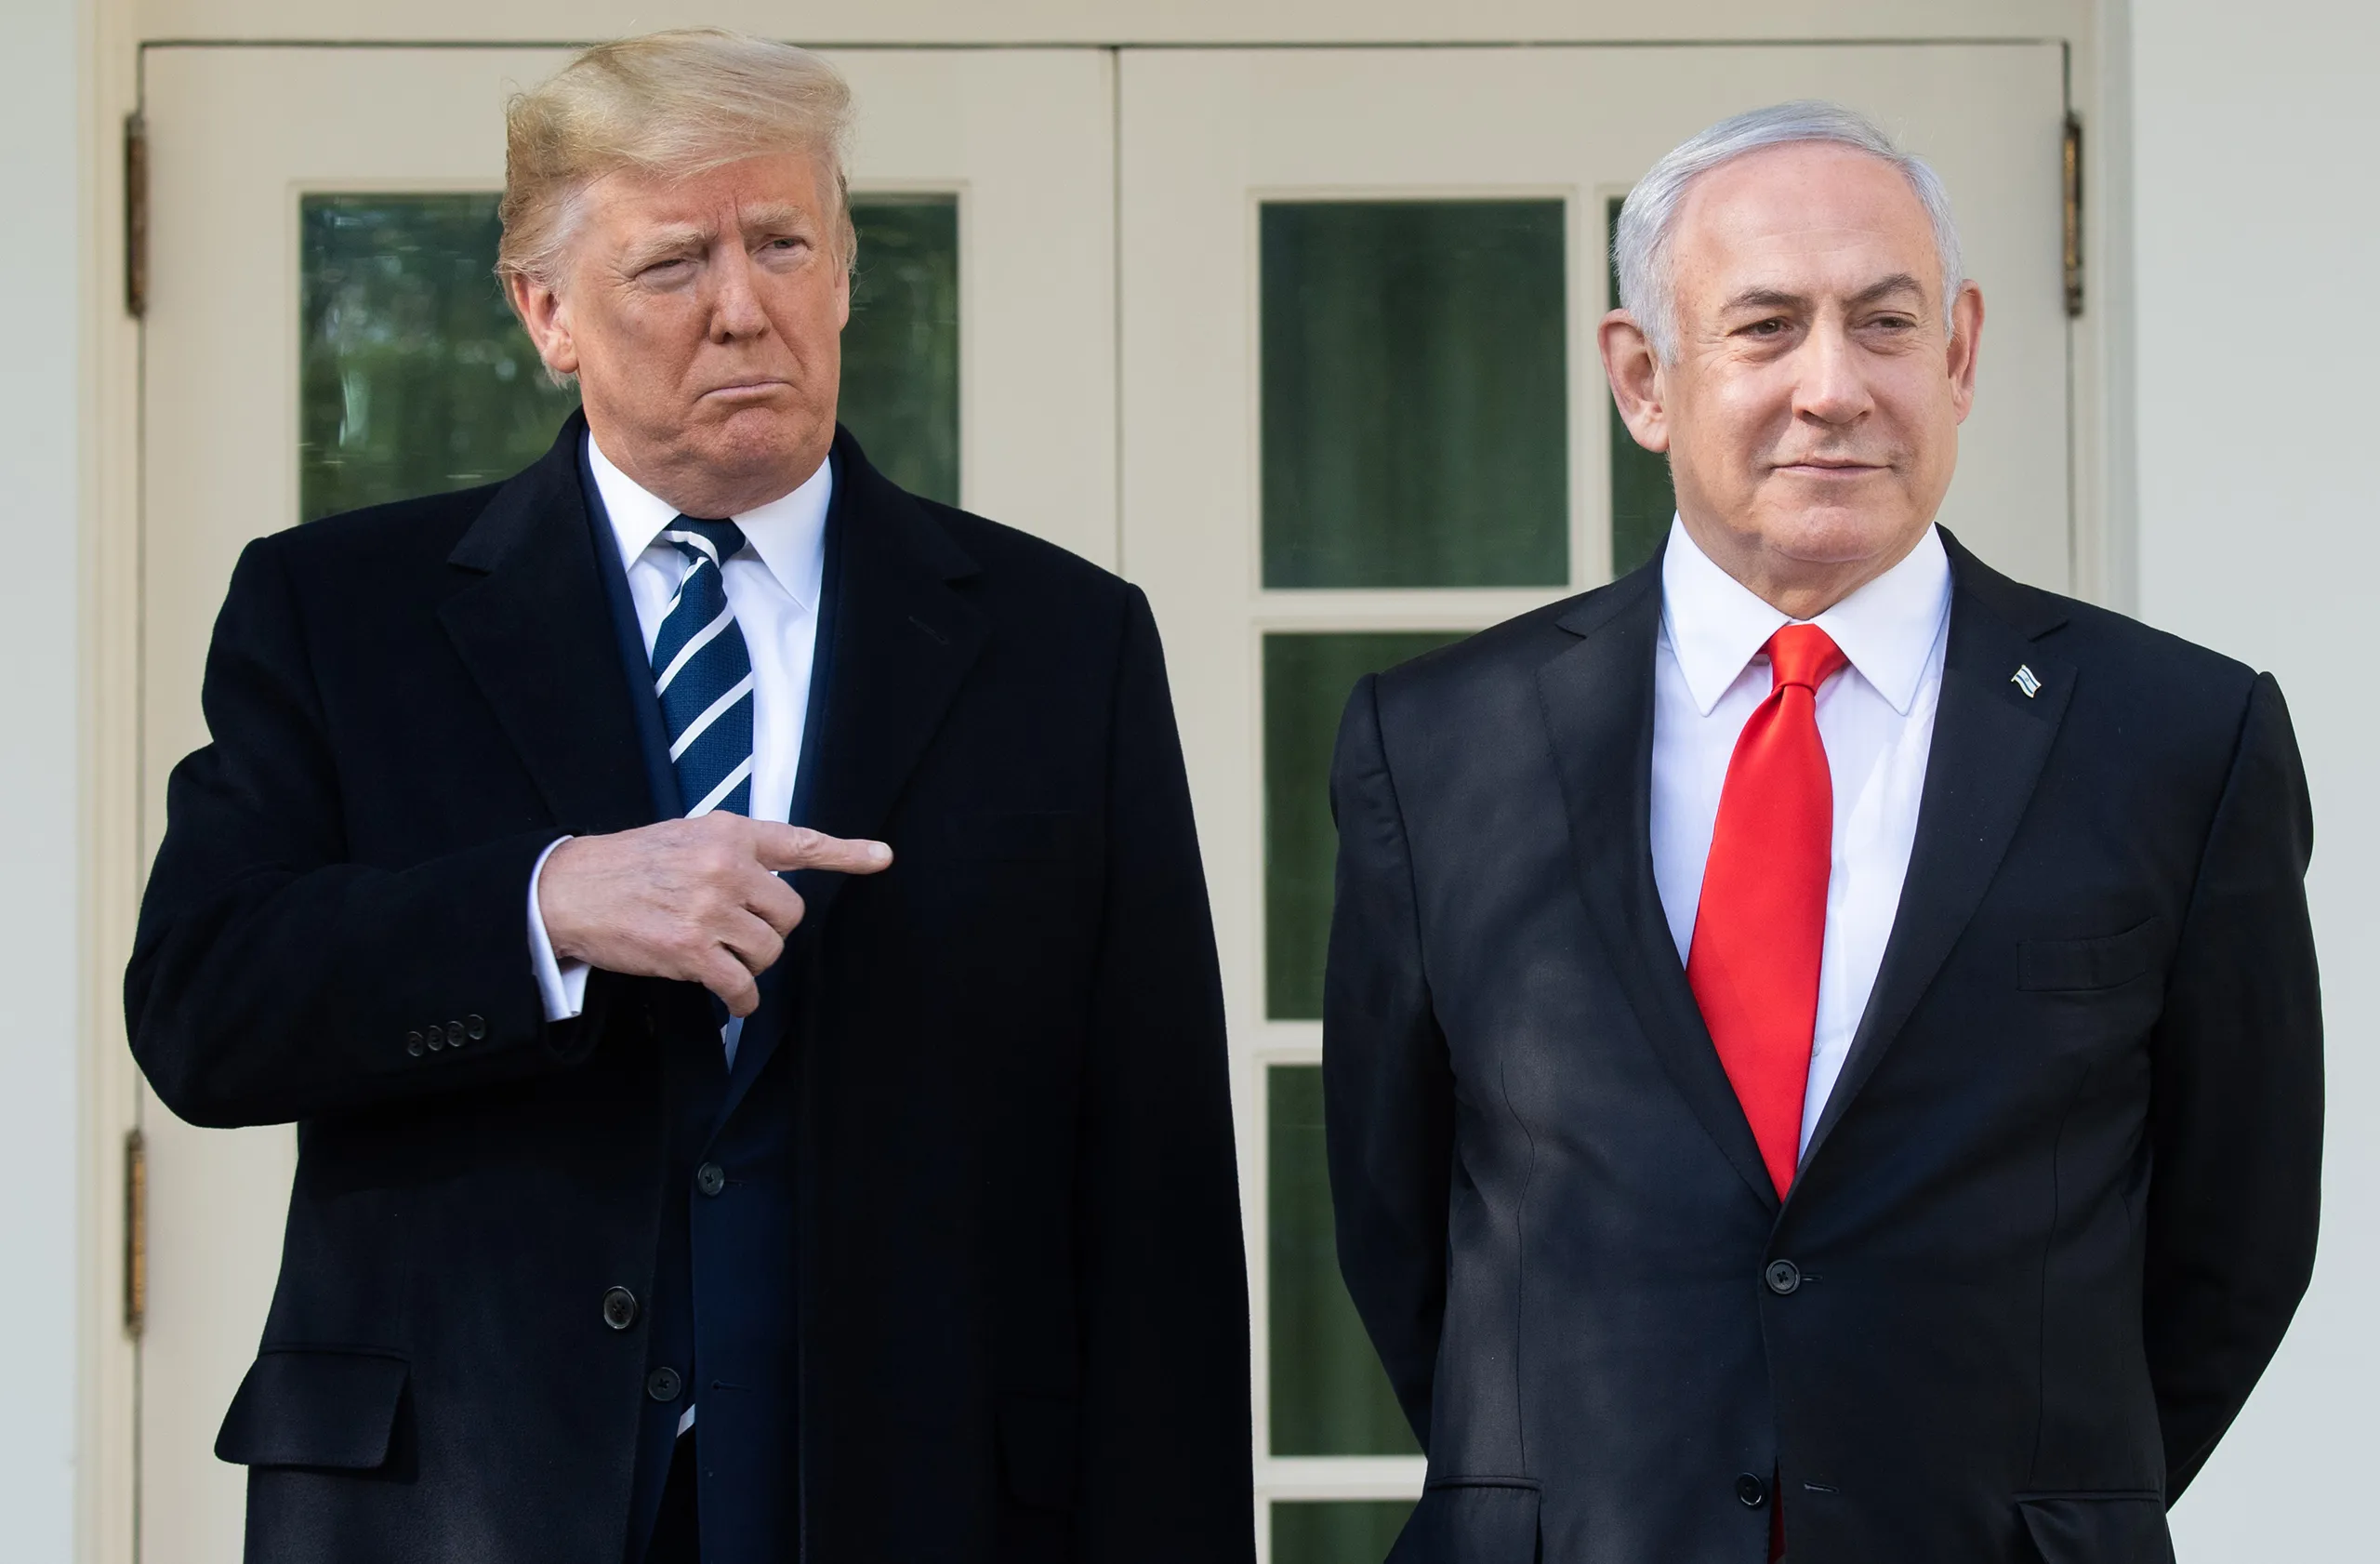 Trump'tan Kasım Süleymani operasyonu açıklaması: Netanyahu son anda vazgeçti